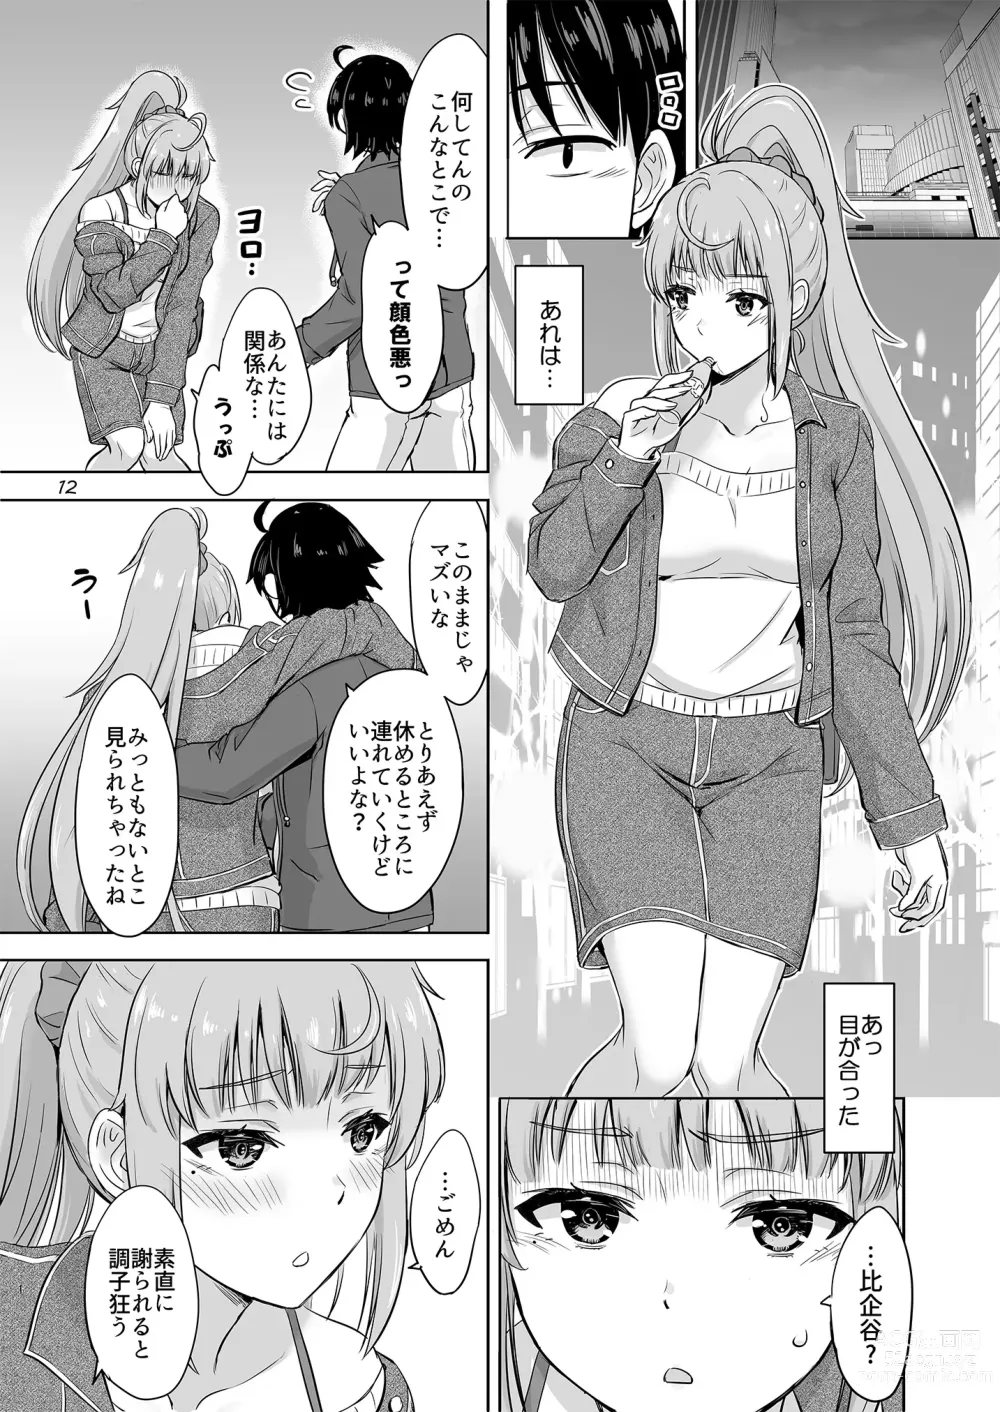 Page 11 of doujinshi Dokyusei-tachi to no Sukoshi Ibitsu na Nikutai Kankei. - Yumiko miura & Saki kawasaki each have sex with Hachiman.